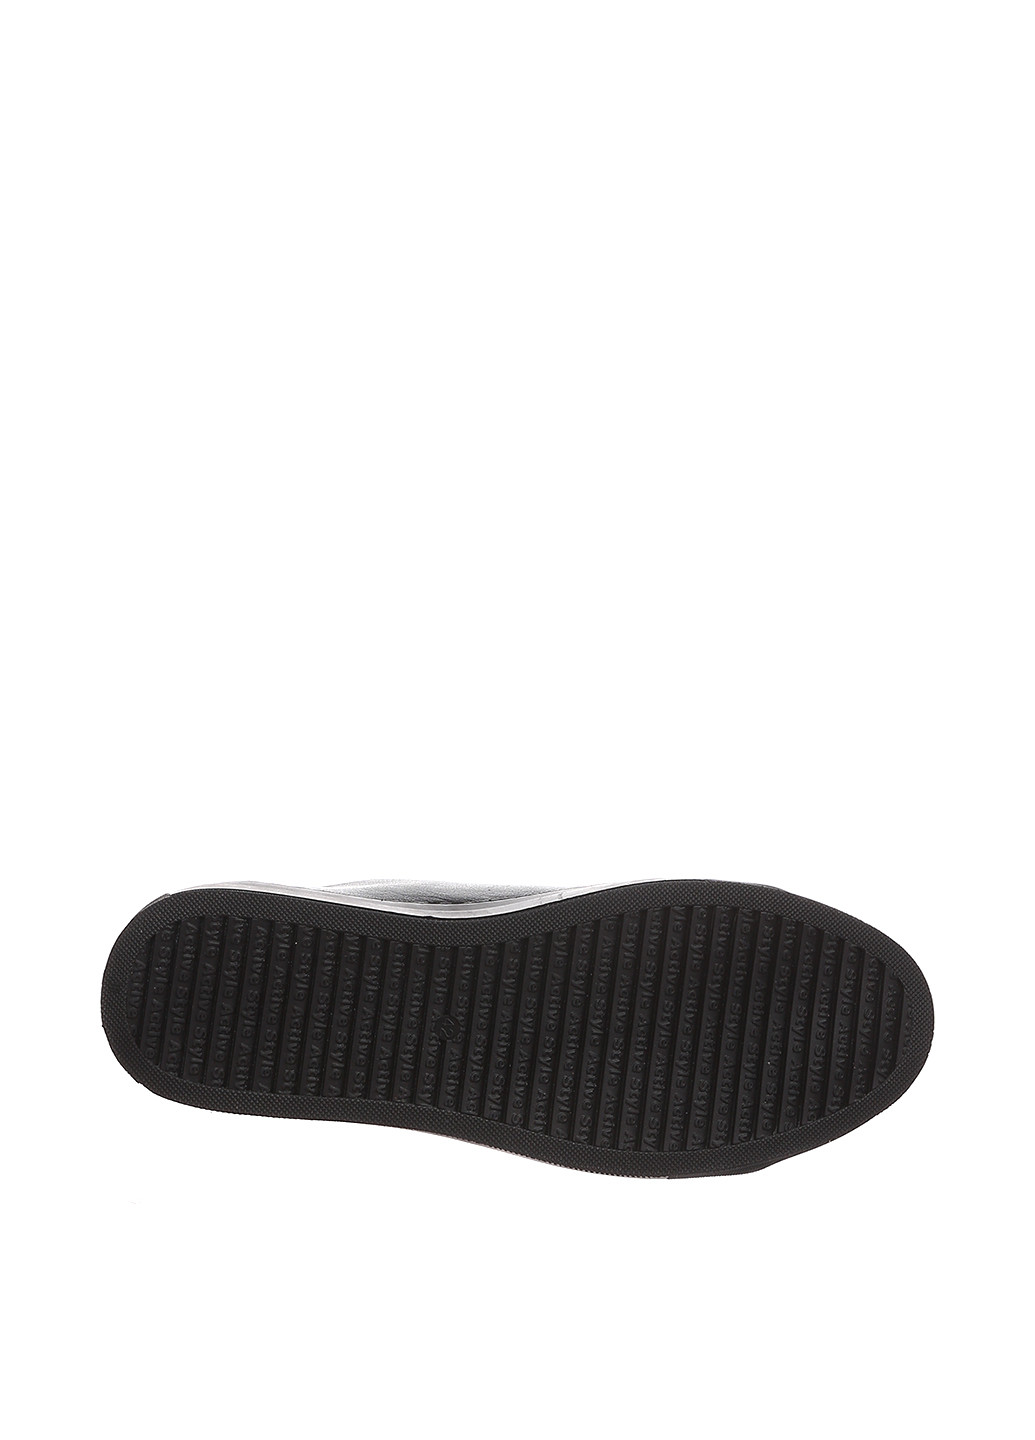 Черные классические туфли Kersi на шнурках